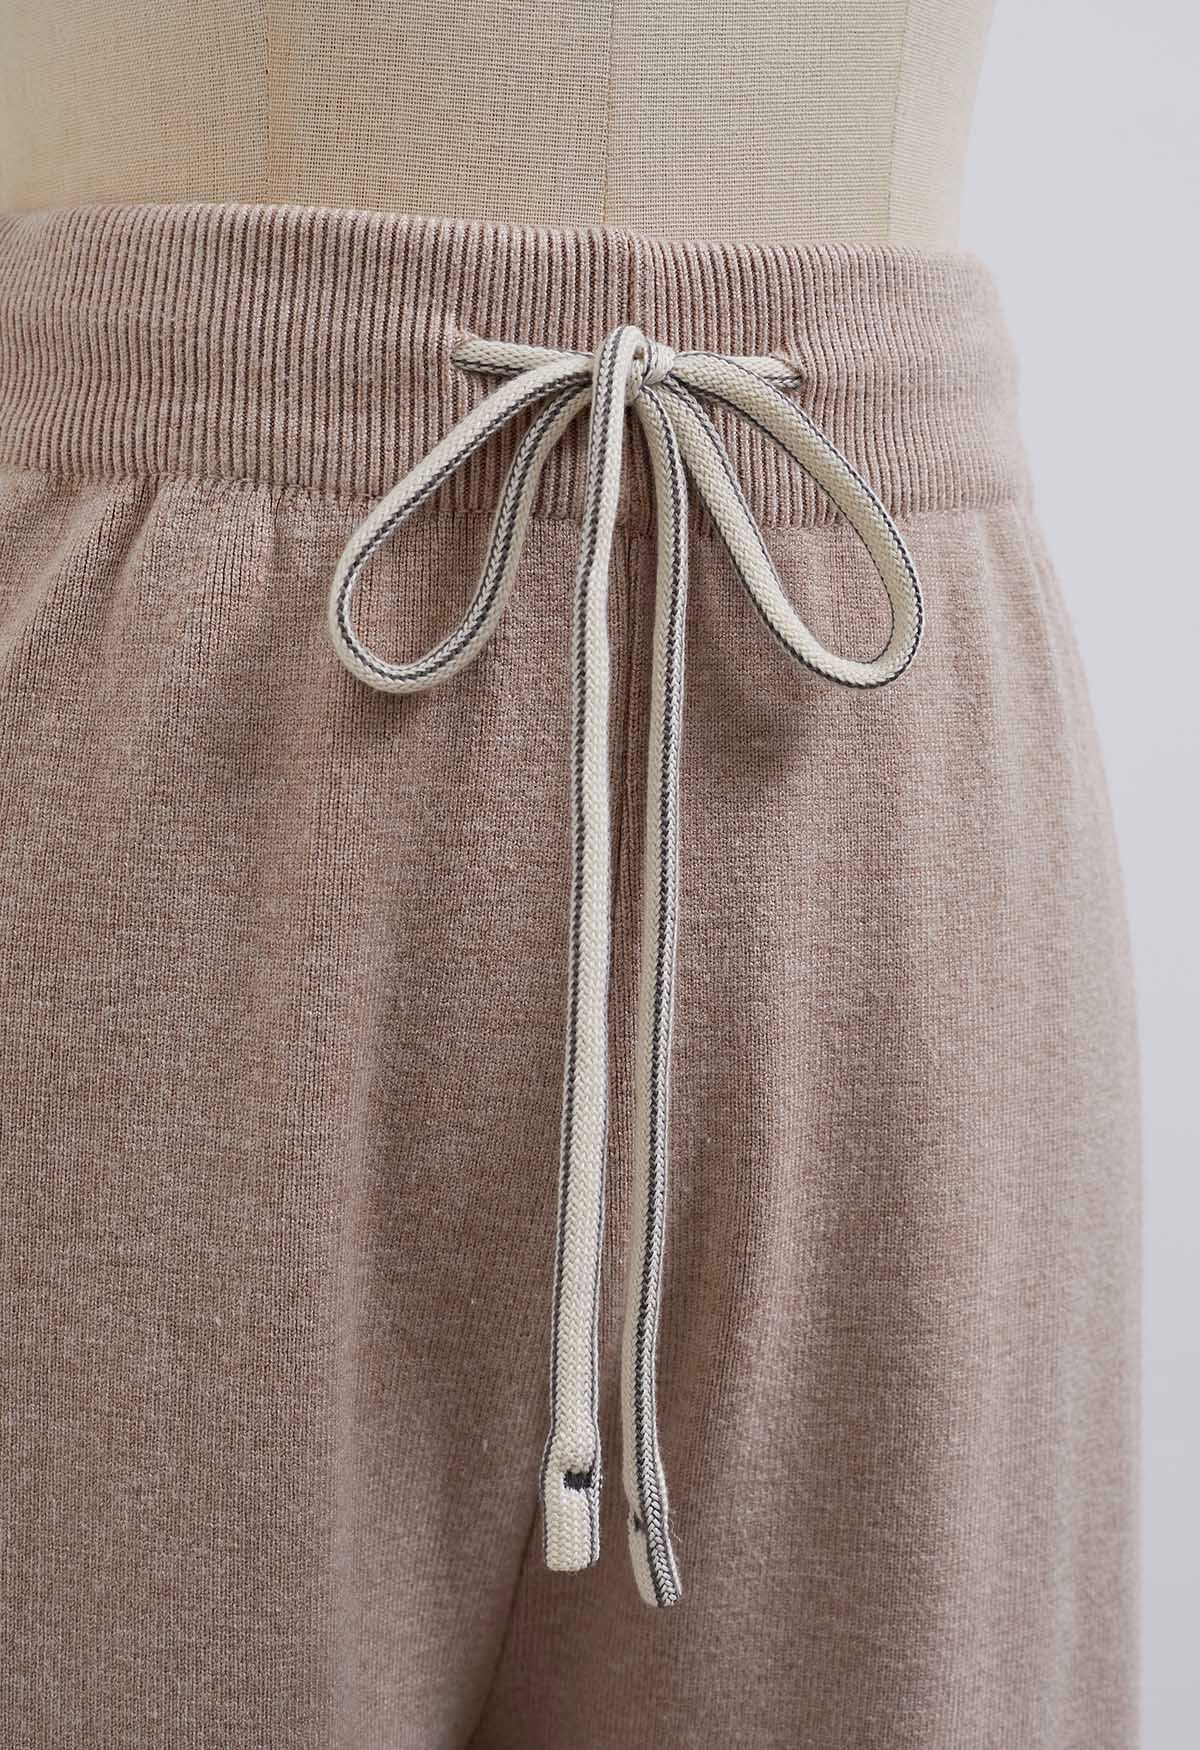 Pantalon en tricot côtelé avec cordon de serrage à la taille, couleur avoine